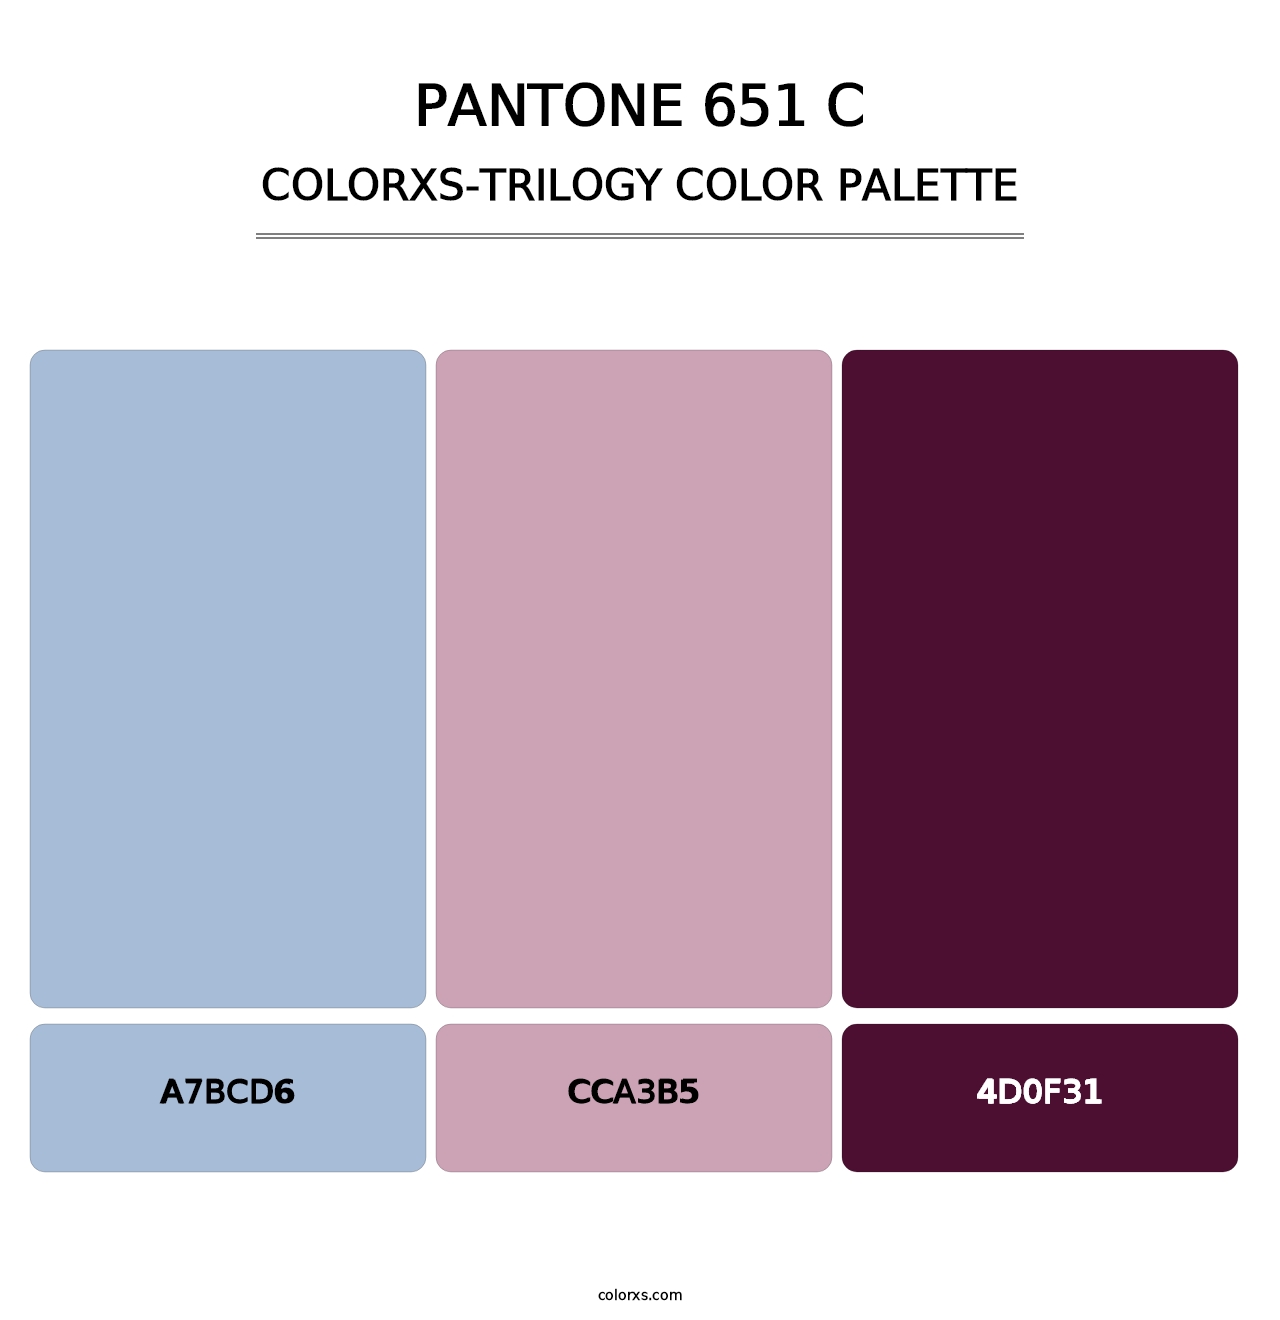 PANTONE 651 C - Colorxs Trilogy Palette